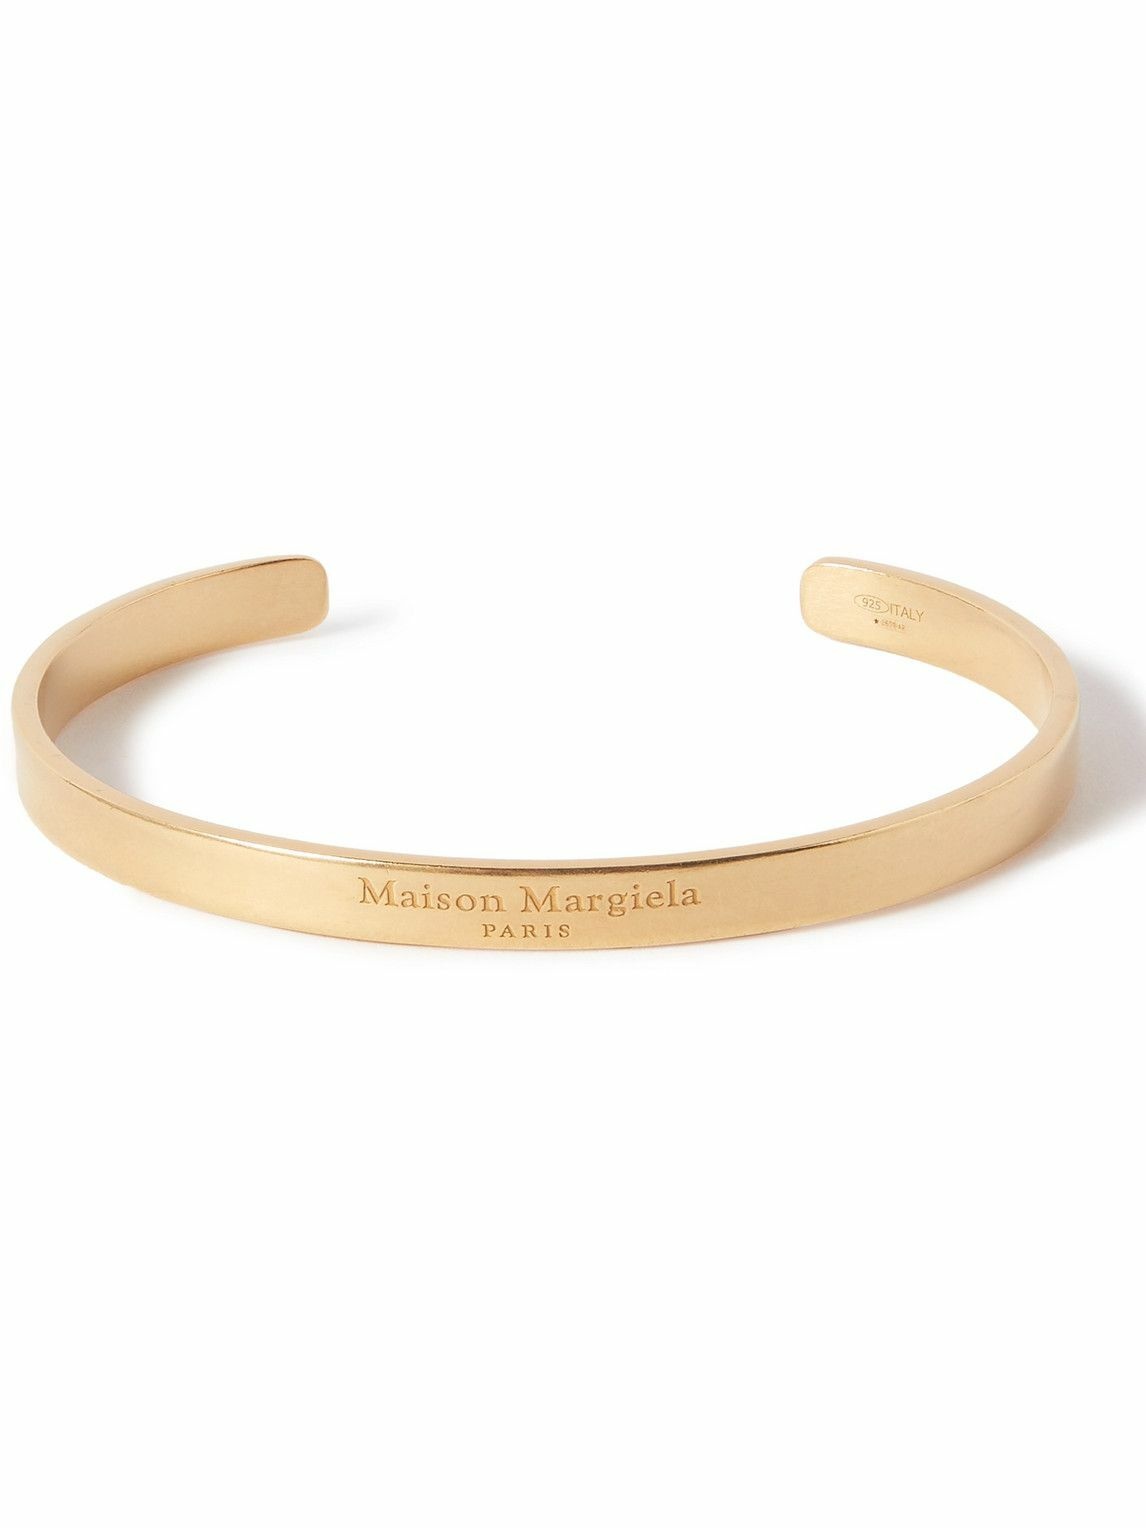 Maison Margiela - Logo-Engraved Gold-Plated Cuff - Gold Maison Margiela